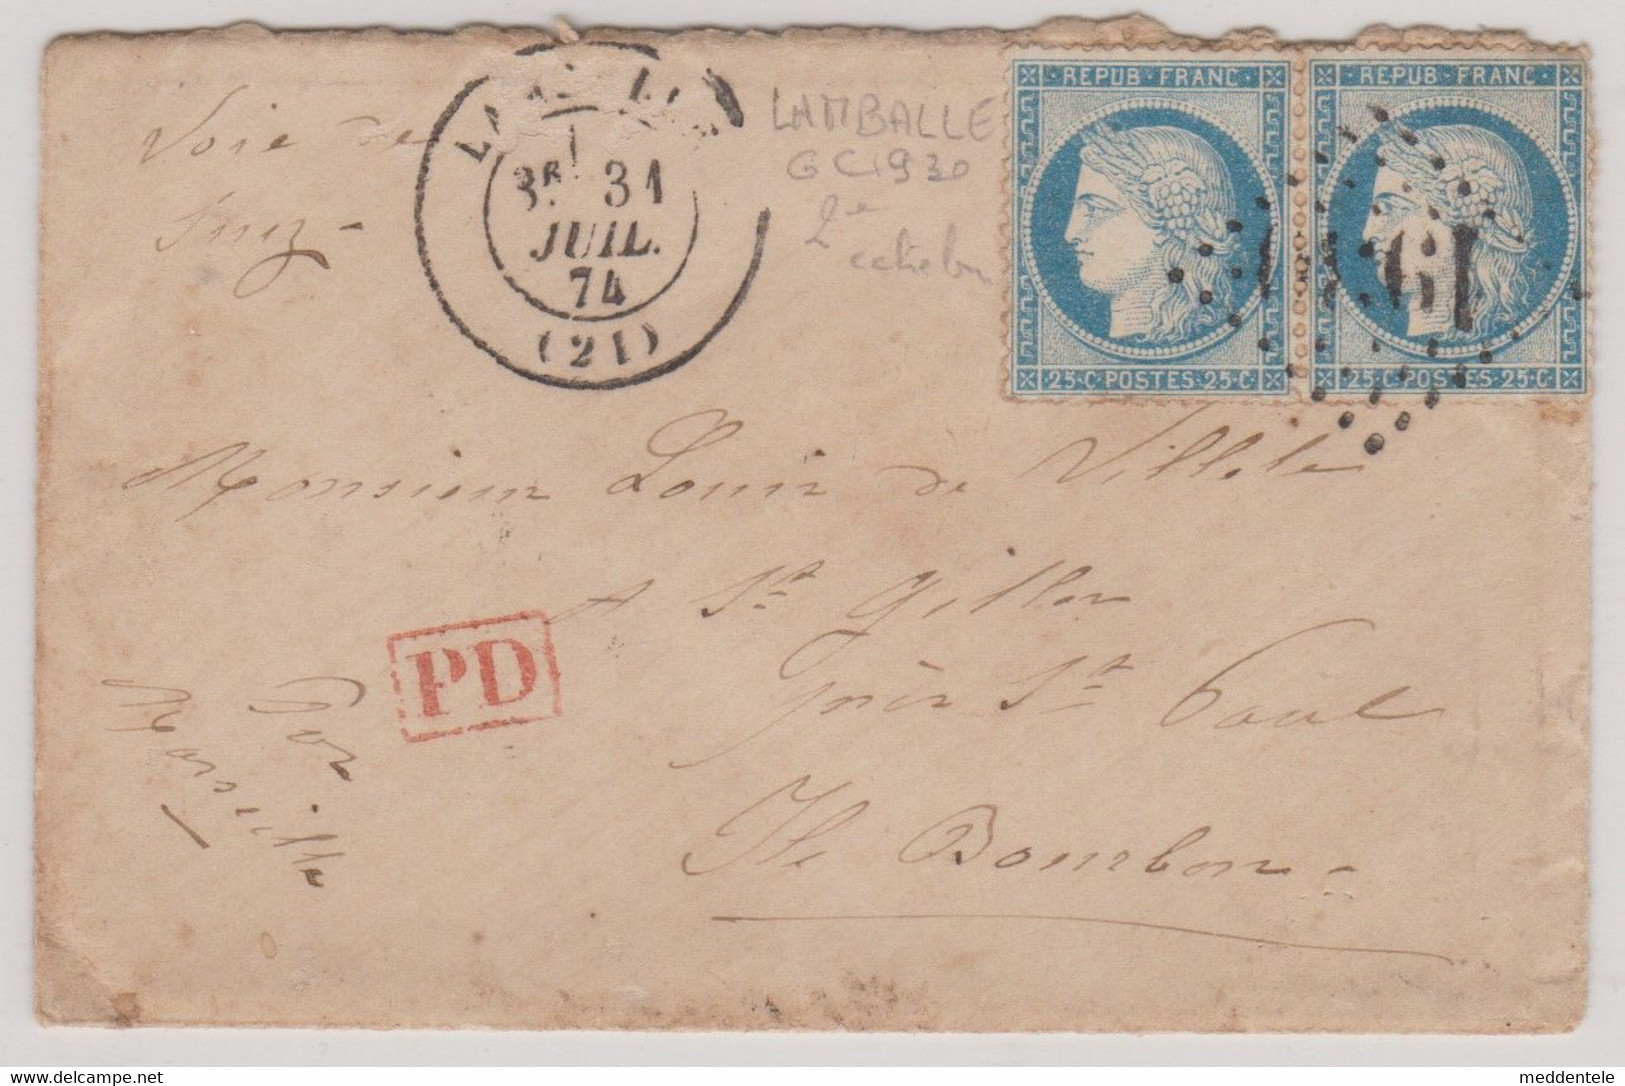 Lettre De LAMBALLE (GC 1930) 31/07/1874 Vers St-GILLES Près St-PAUL (Ile BOURBON) Marseilles/Voie De Suez Pr25cts N°60 - Lettres & Documents